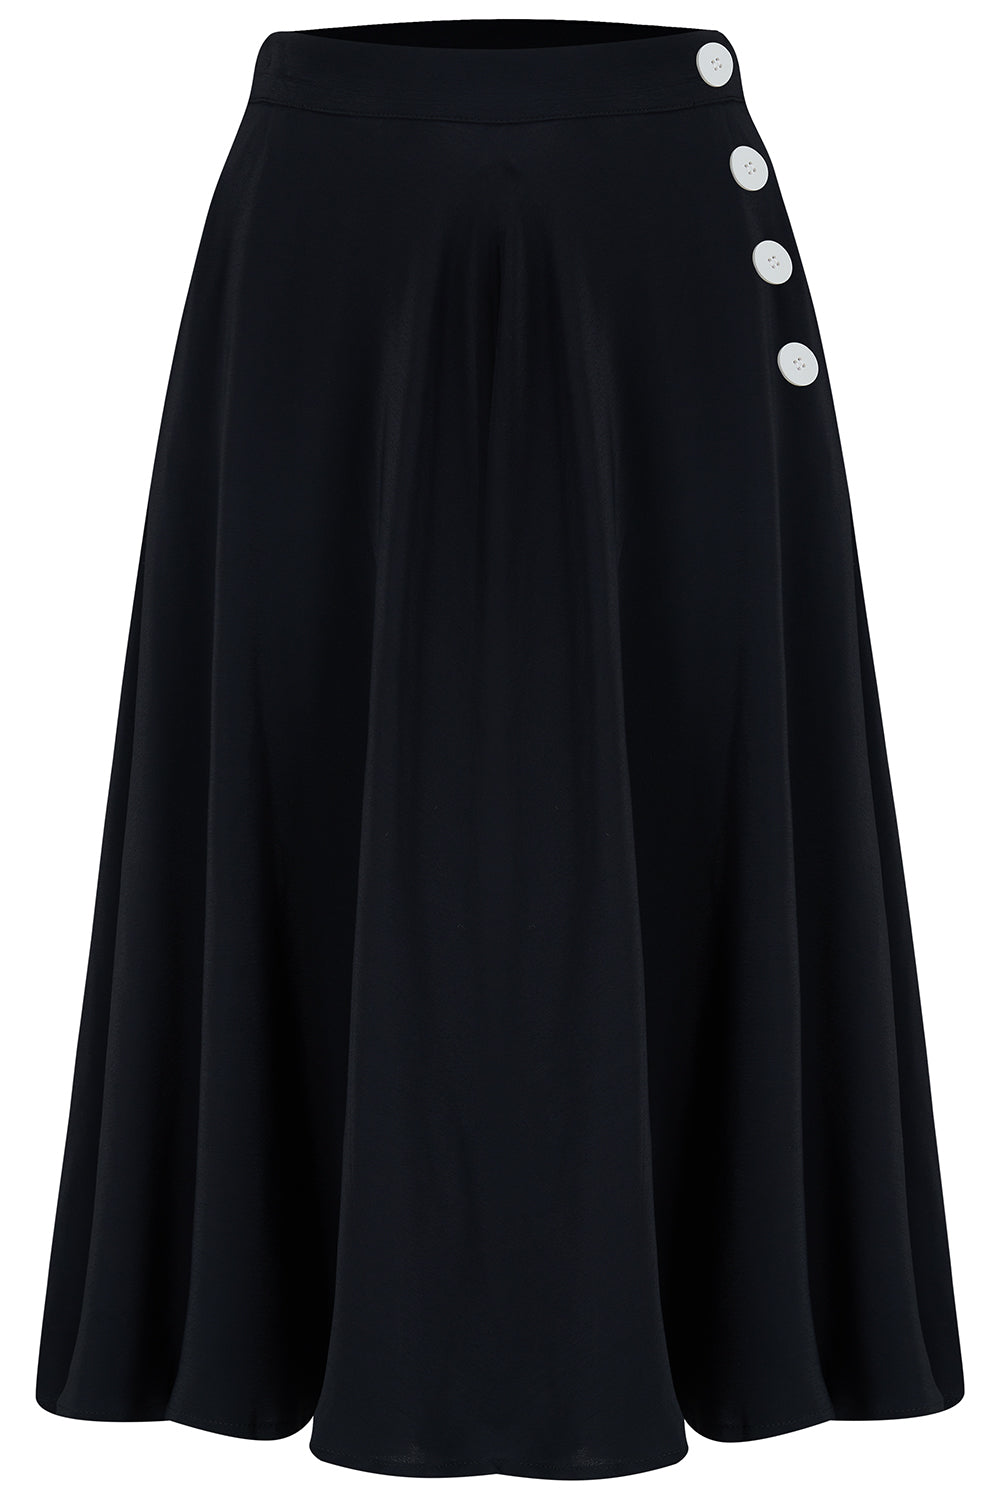 Jupe « Isabelle » en noir, style classique et authentique d’inspiration vintage des années 1940